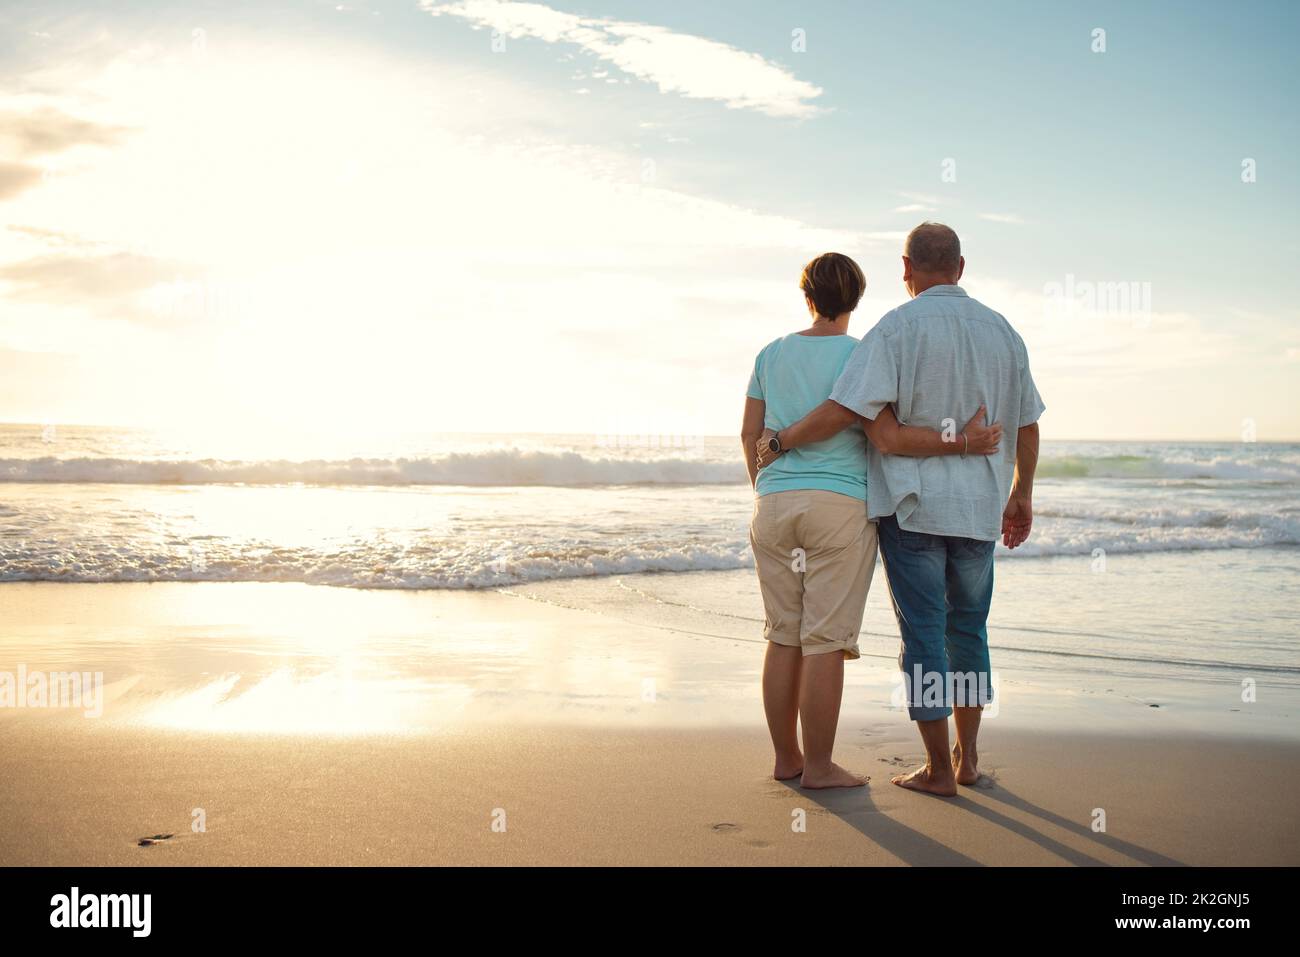 La vita è piena di bellezza. Notatelo. Foto retrostensiva di una coppia che ammirava la vista mentre si trova in spiaggia. Foto Stock